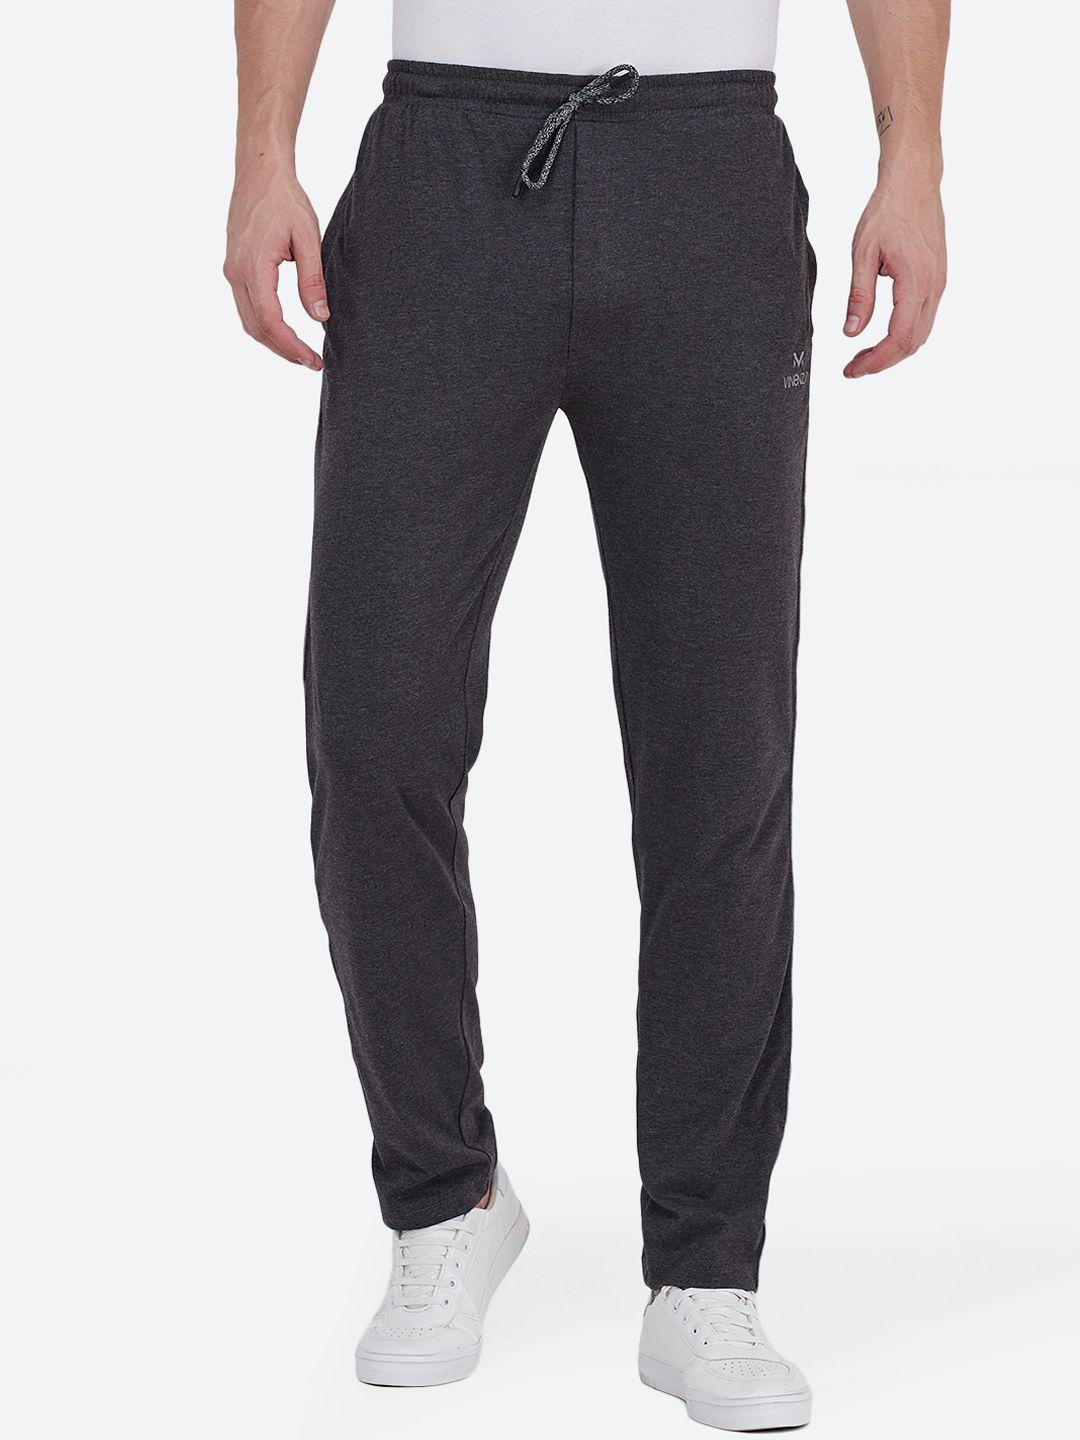 vinenzia men charcoal grey solid slim fit track pants